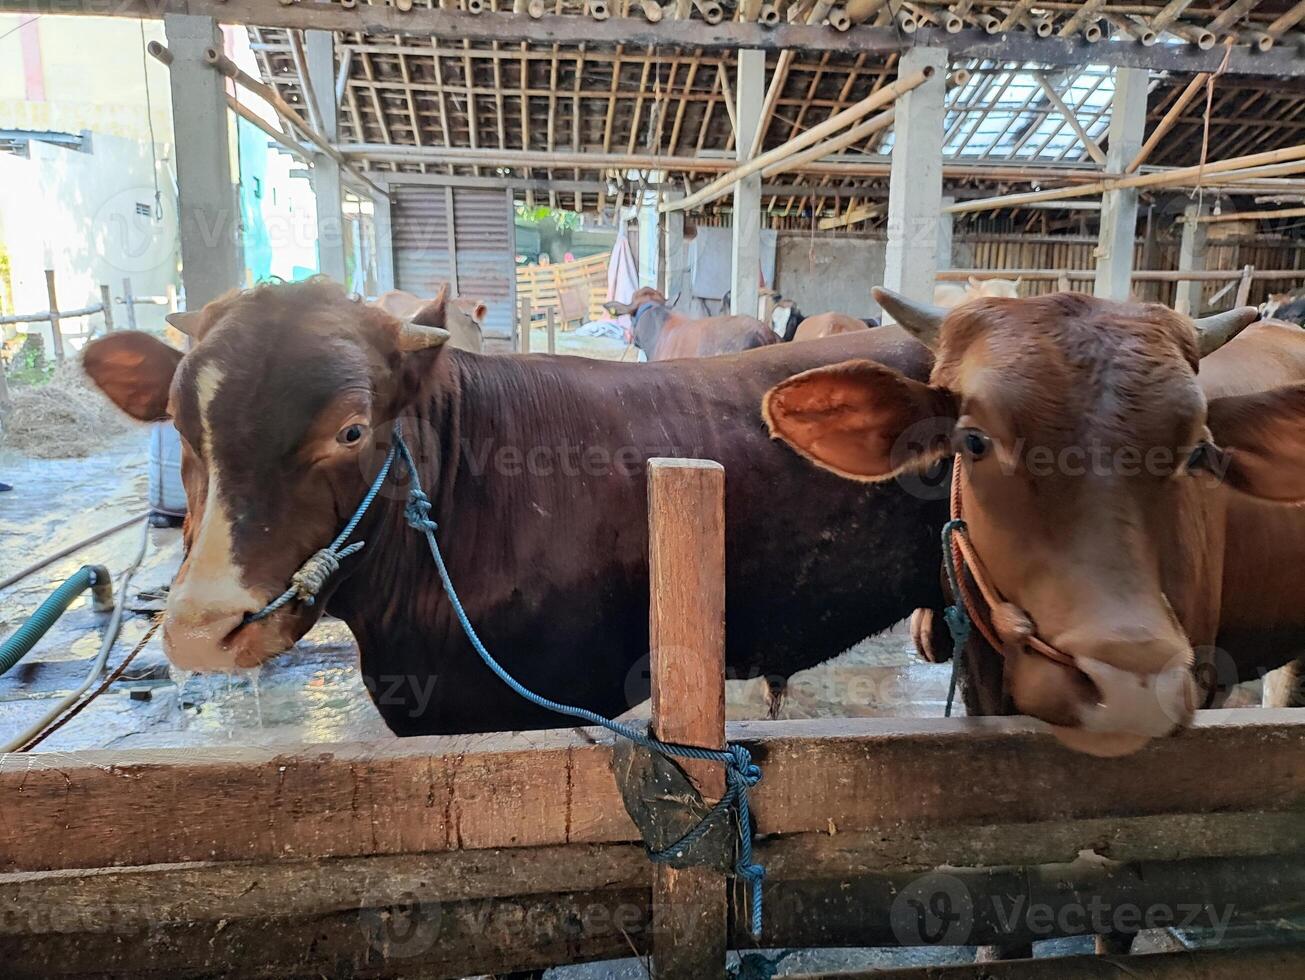 agricultores ter começado meia vacas dentro preparação para a eid al-qurban feriado foto